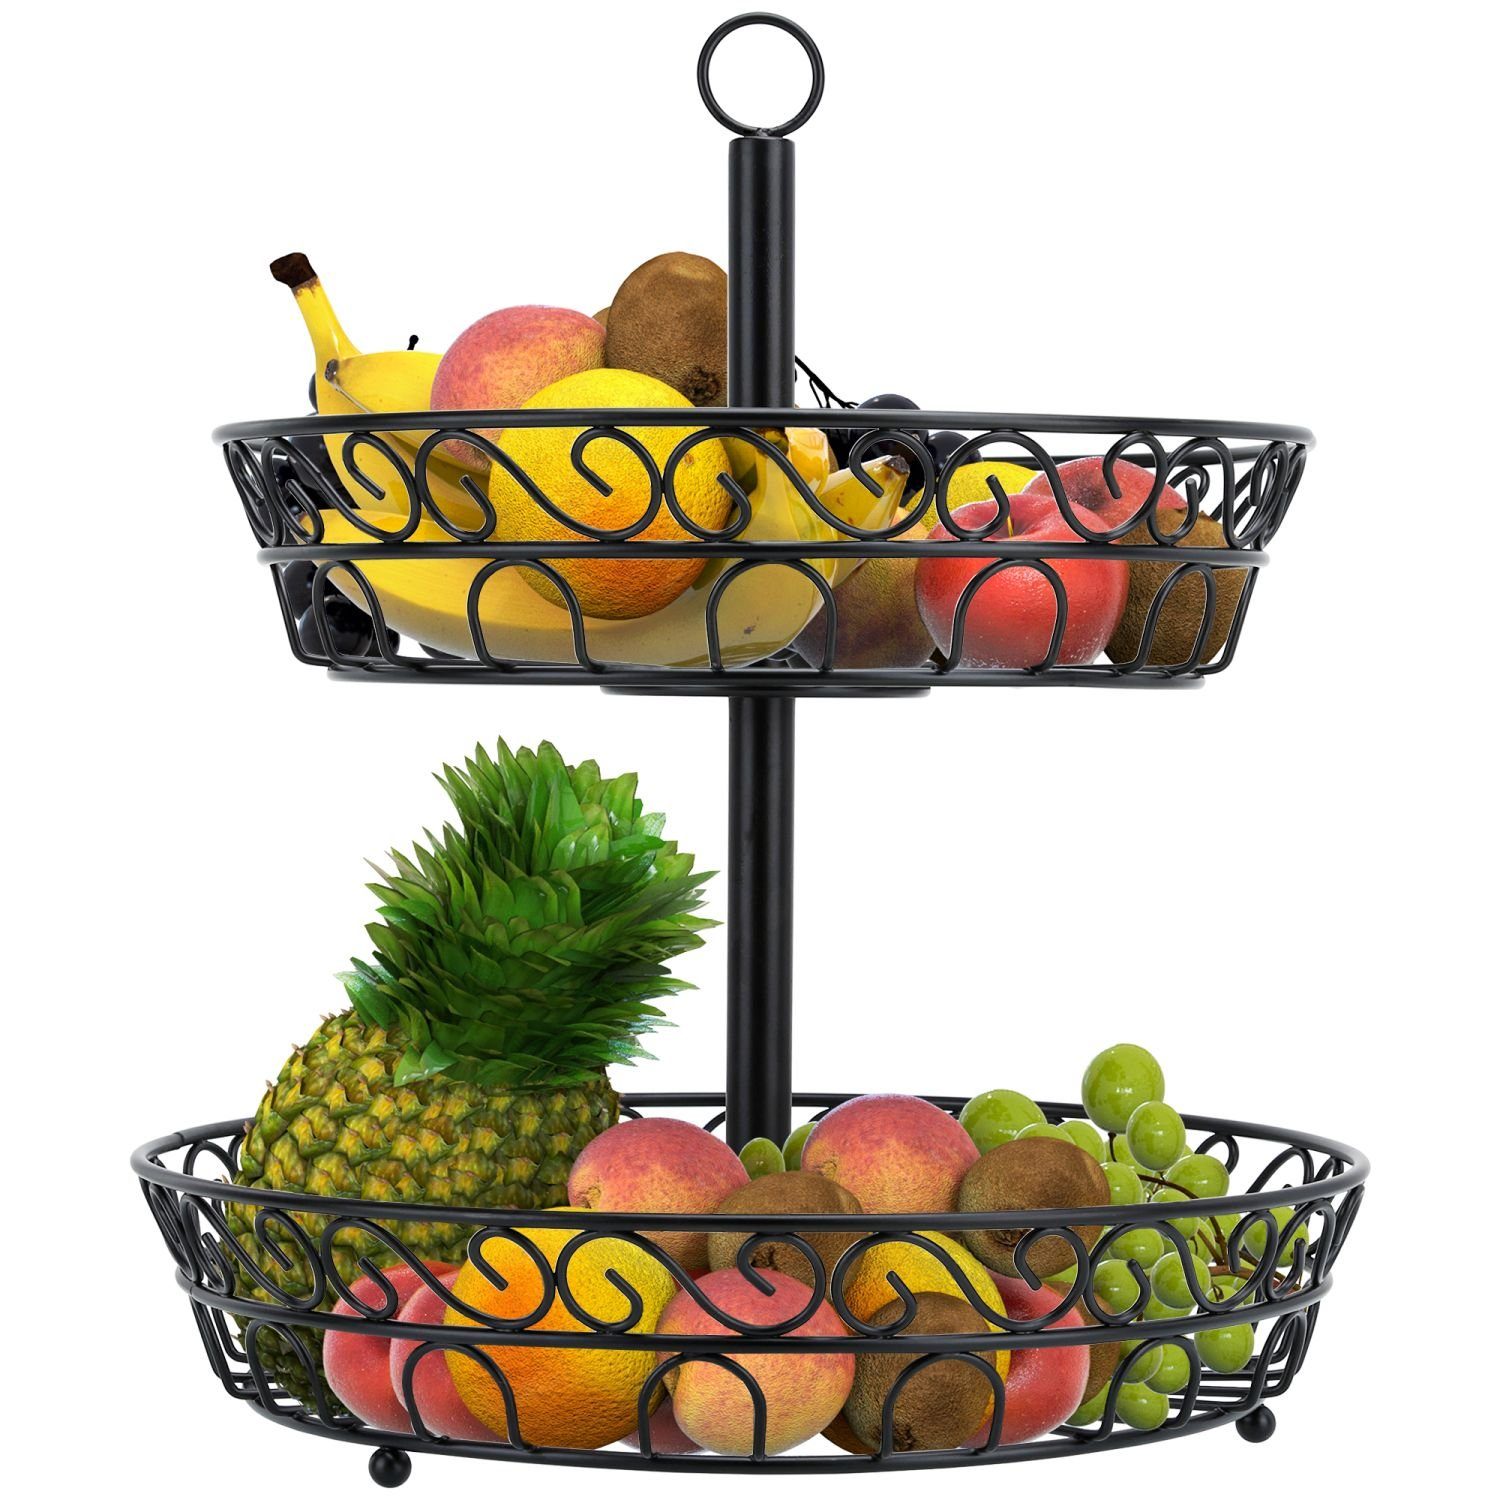 Intirilife Obstschale, Obstkorb Etagere, 2 Stockwerke - 2 Etagen Schale zum  aufstellen und aufhängen für Obst, Gemüse u.v.m.